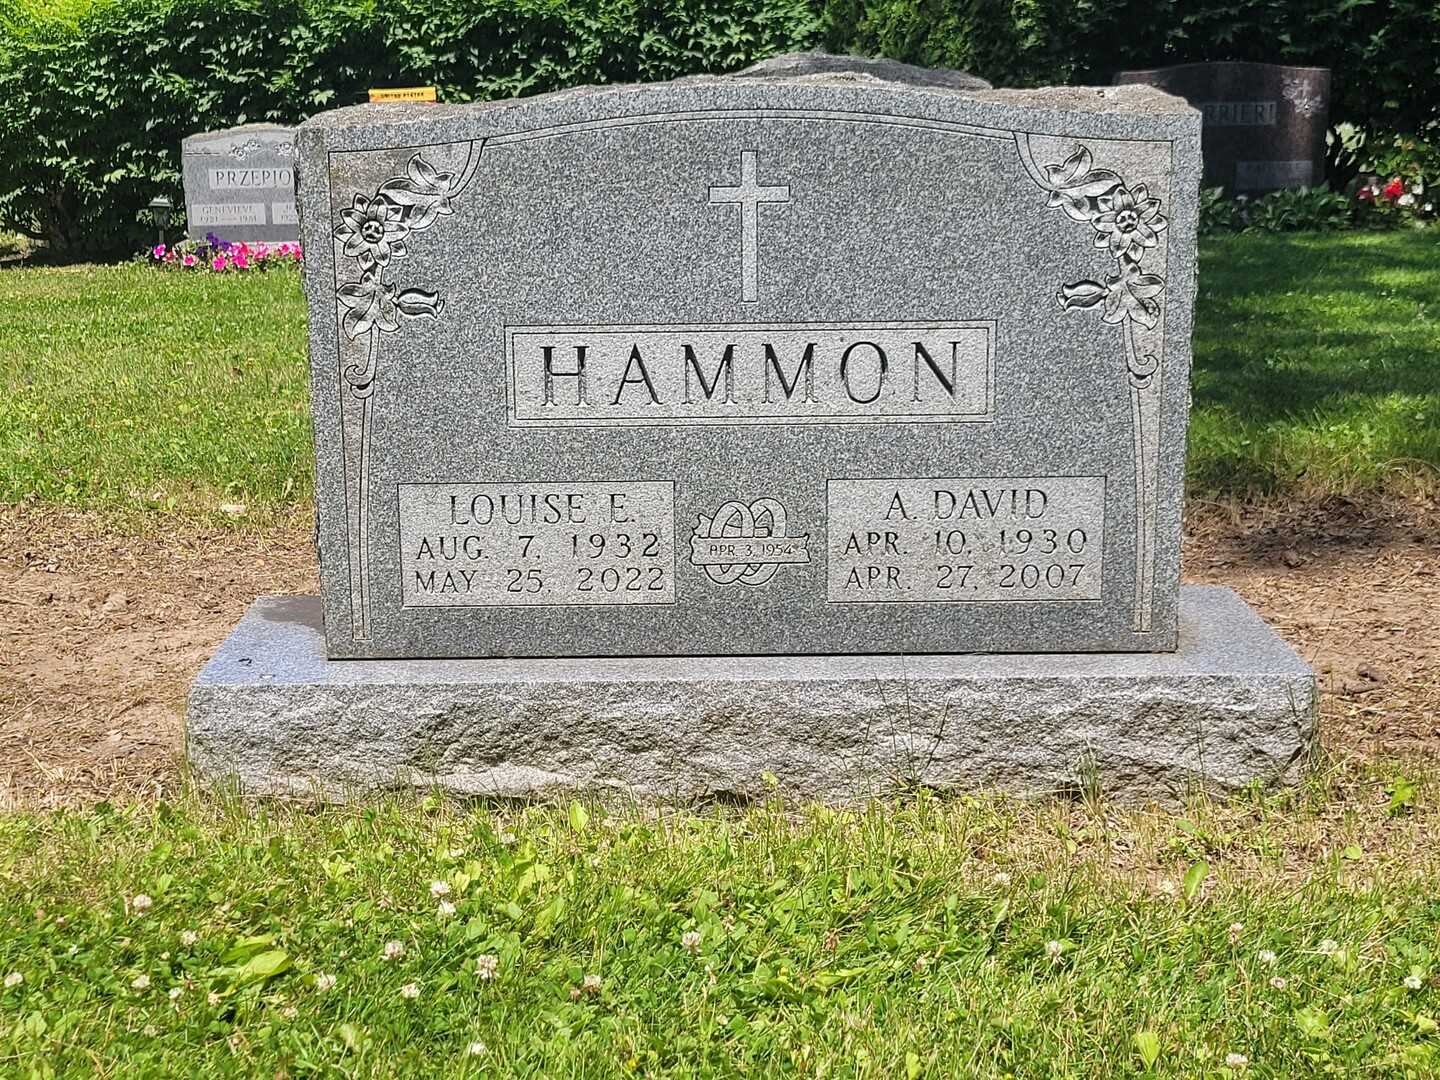 David A. Hammon's grave. Photo 2